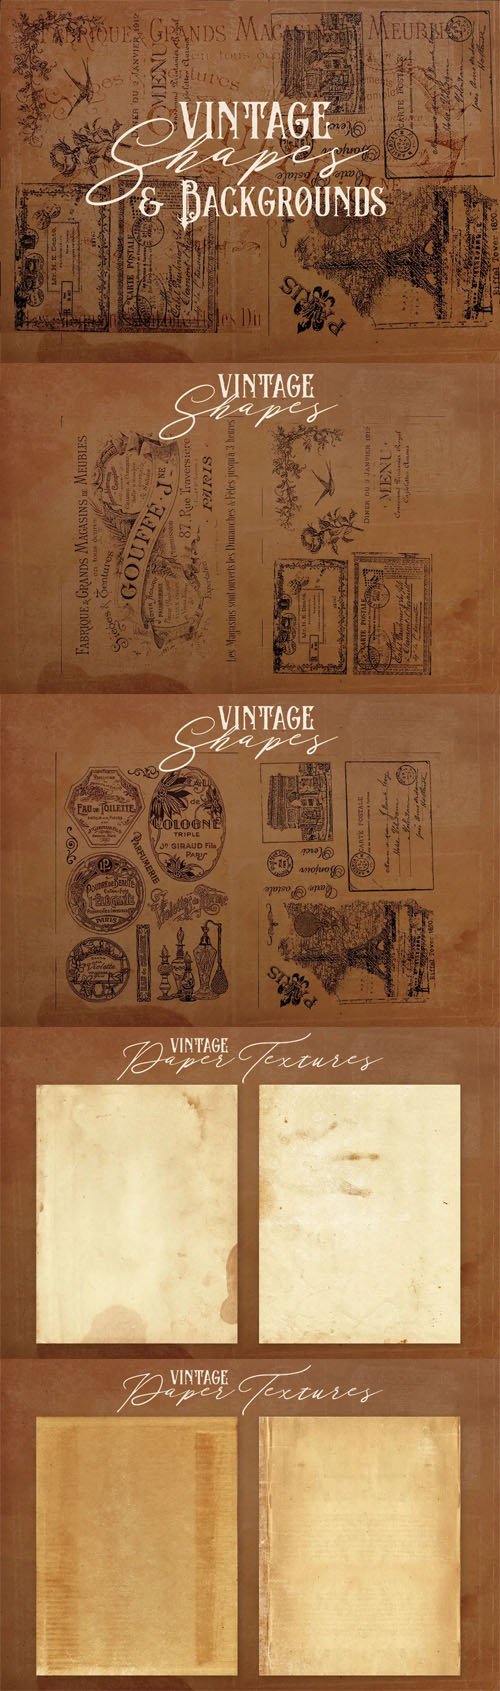 8 Vintage Badge Shapes & Grunge Paper Textures